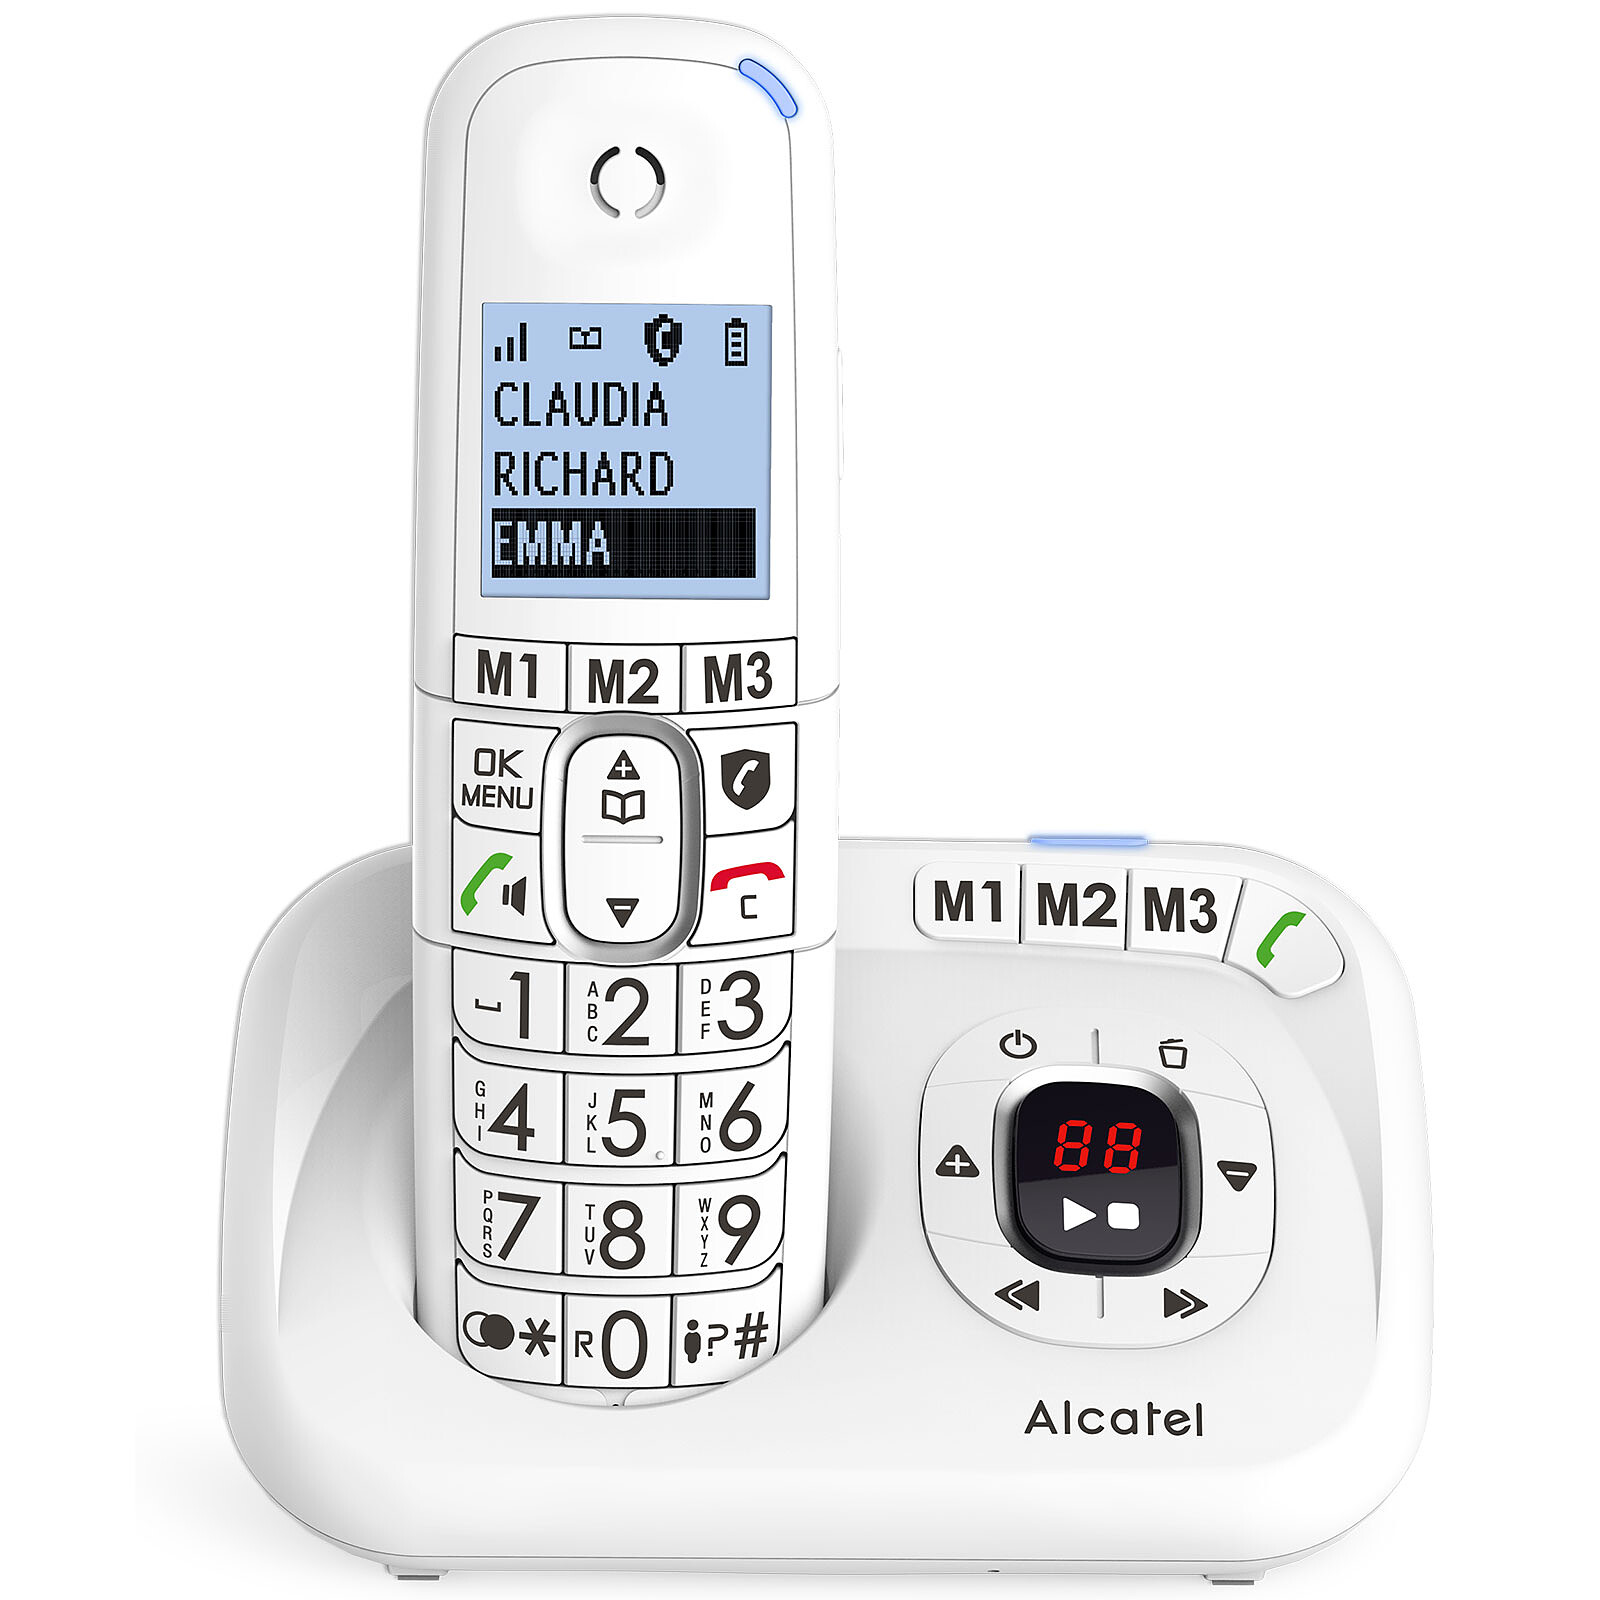 ALCATEL F890 Voice Duo Noir Téléphone répondeur sans fil - Blocage